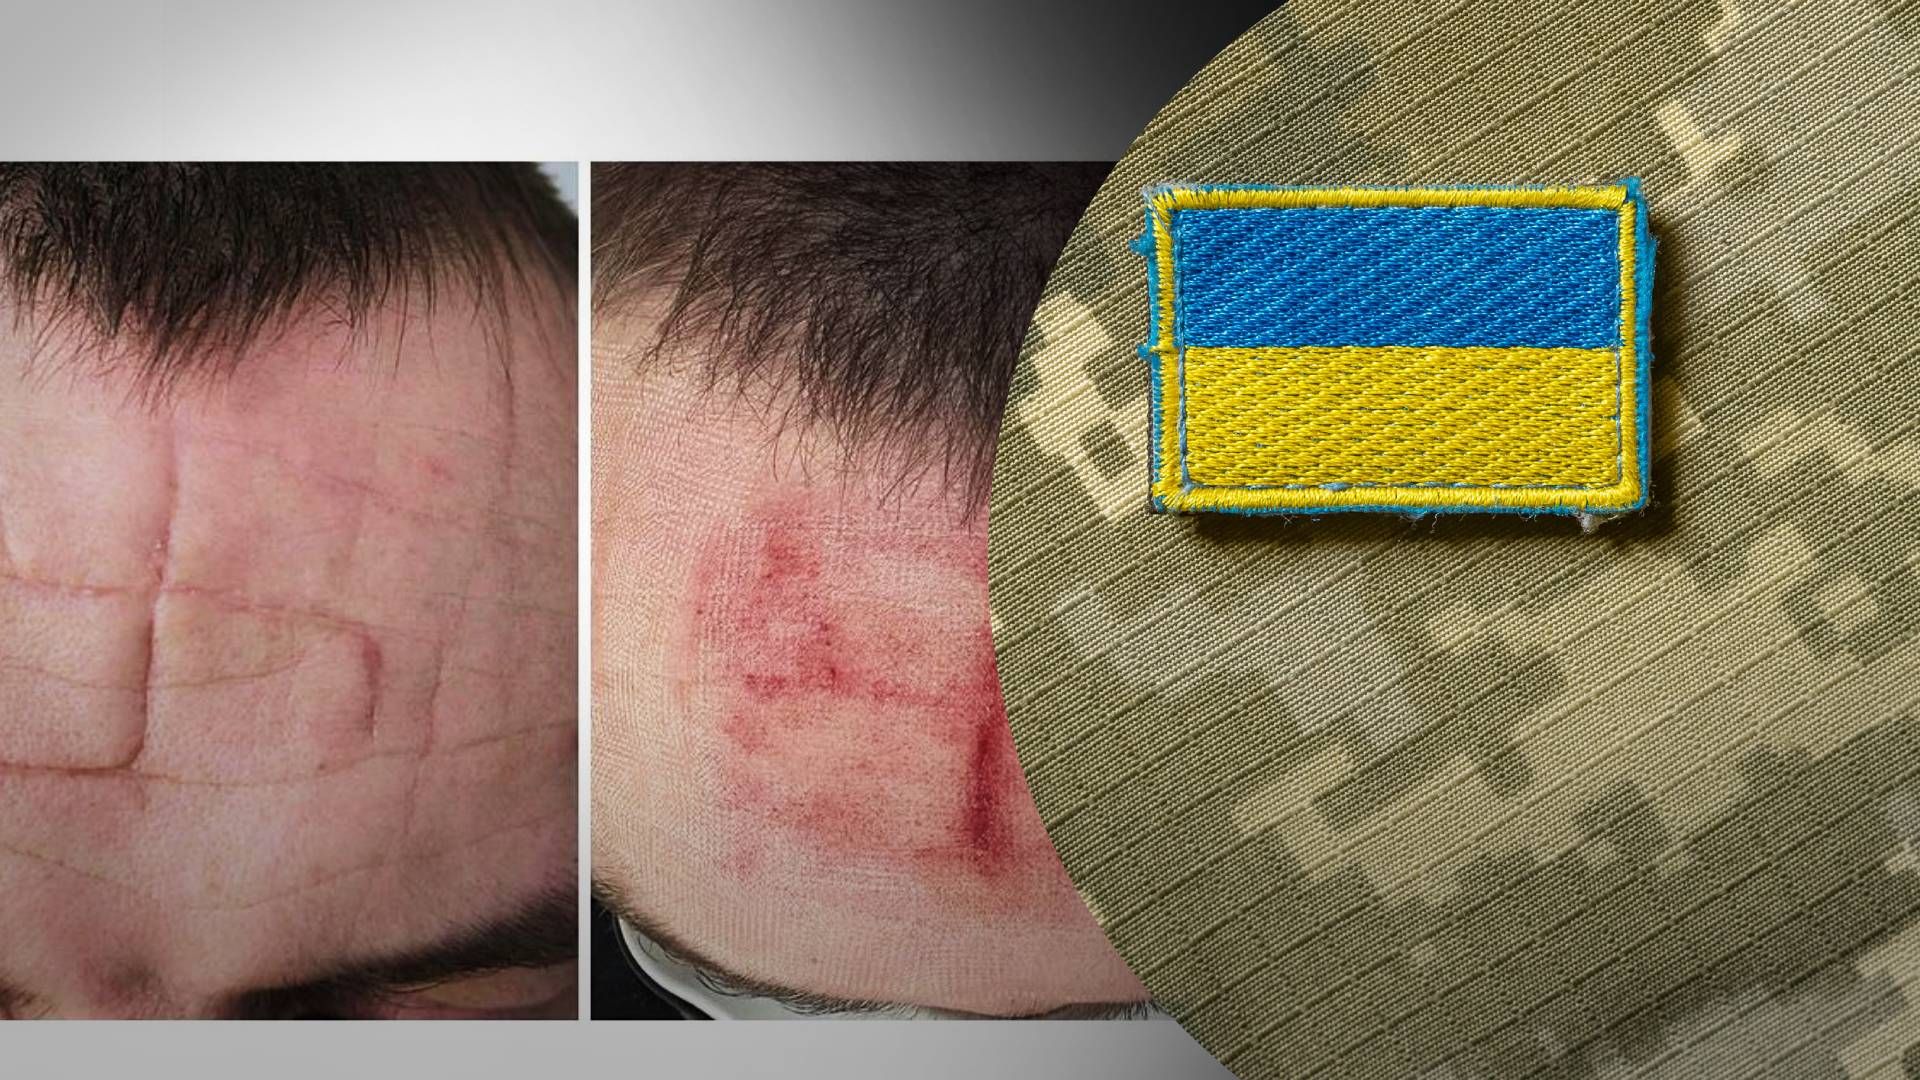 Проект "Неопалимые" опубликовал фотографии со шрамом в форме свастики на лице военного - 24 Канал